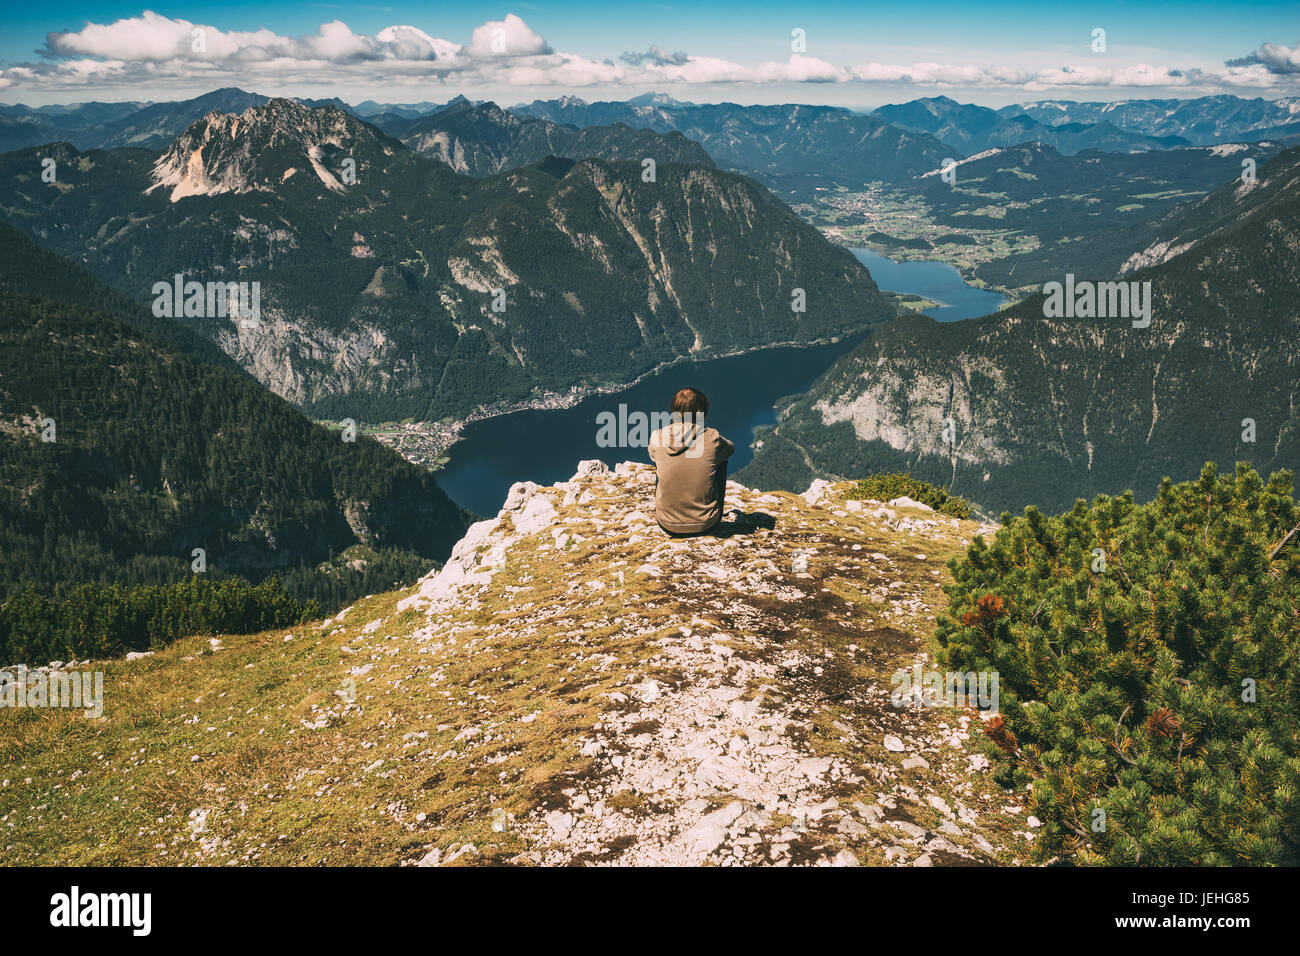 Jeune homme assis sur le bord de la montagne et bénéficiant d'une vue spectaculaire. Image aux tons Vintage Banque D'Images